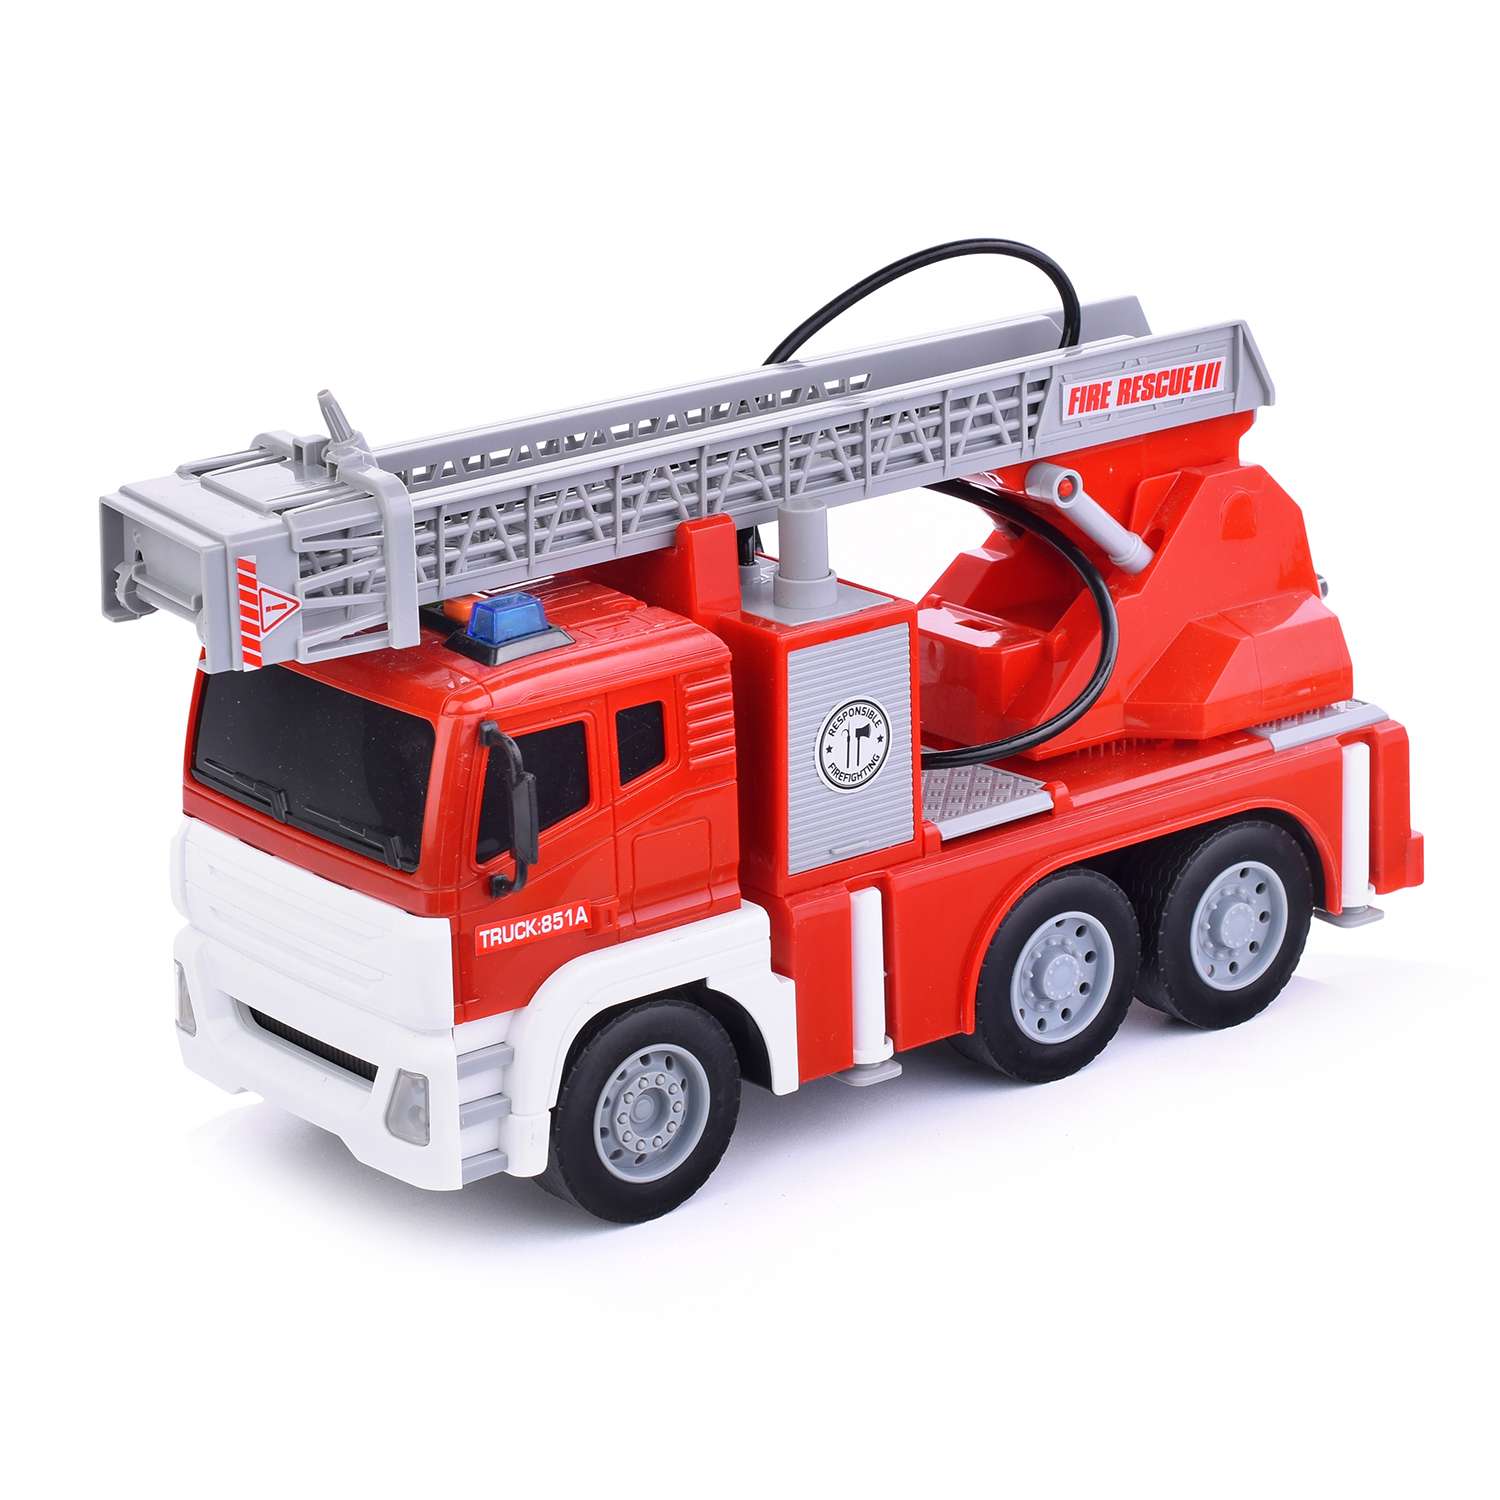 Пожарная машина WENYI большая со световыми и звуковыми эффектами WY851A - фото 1